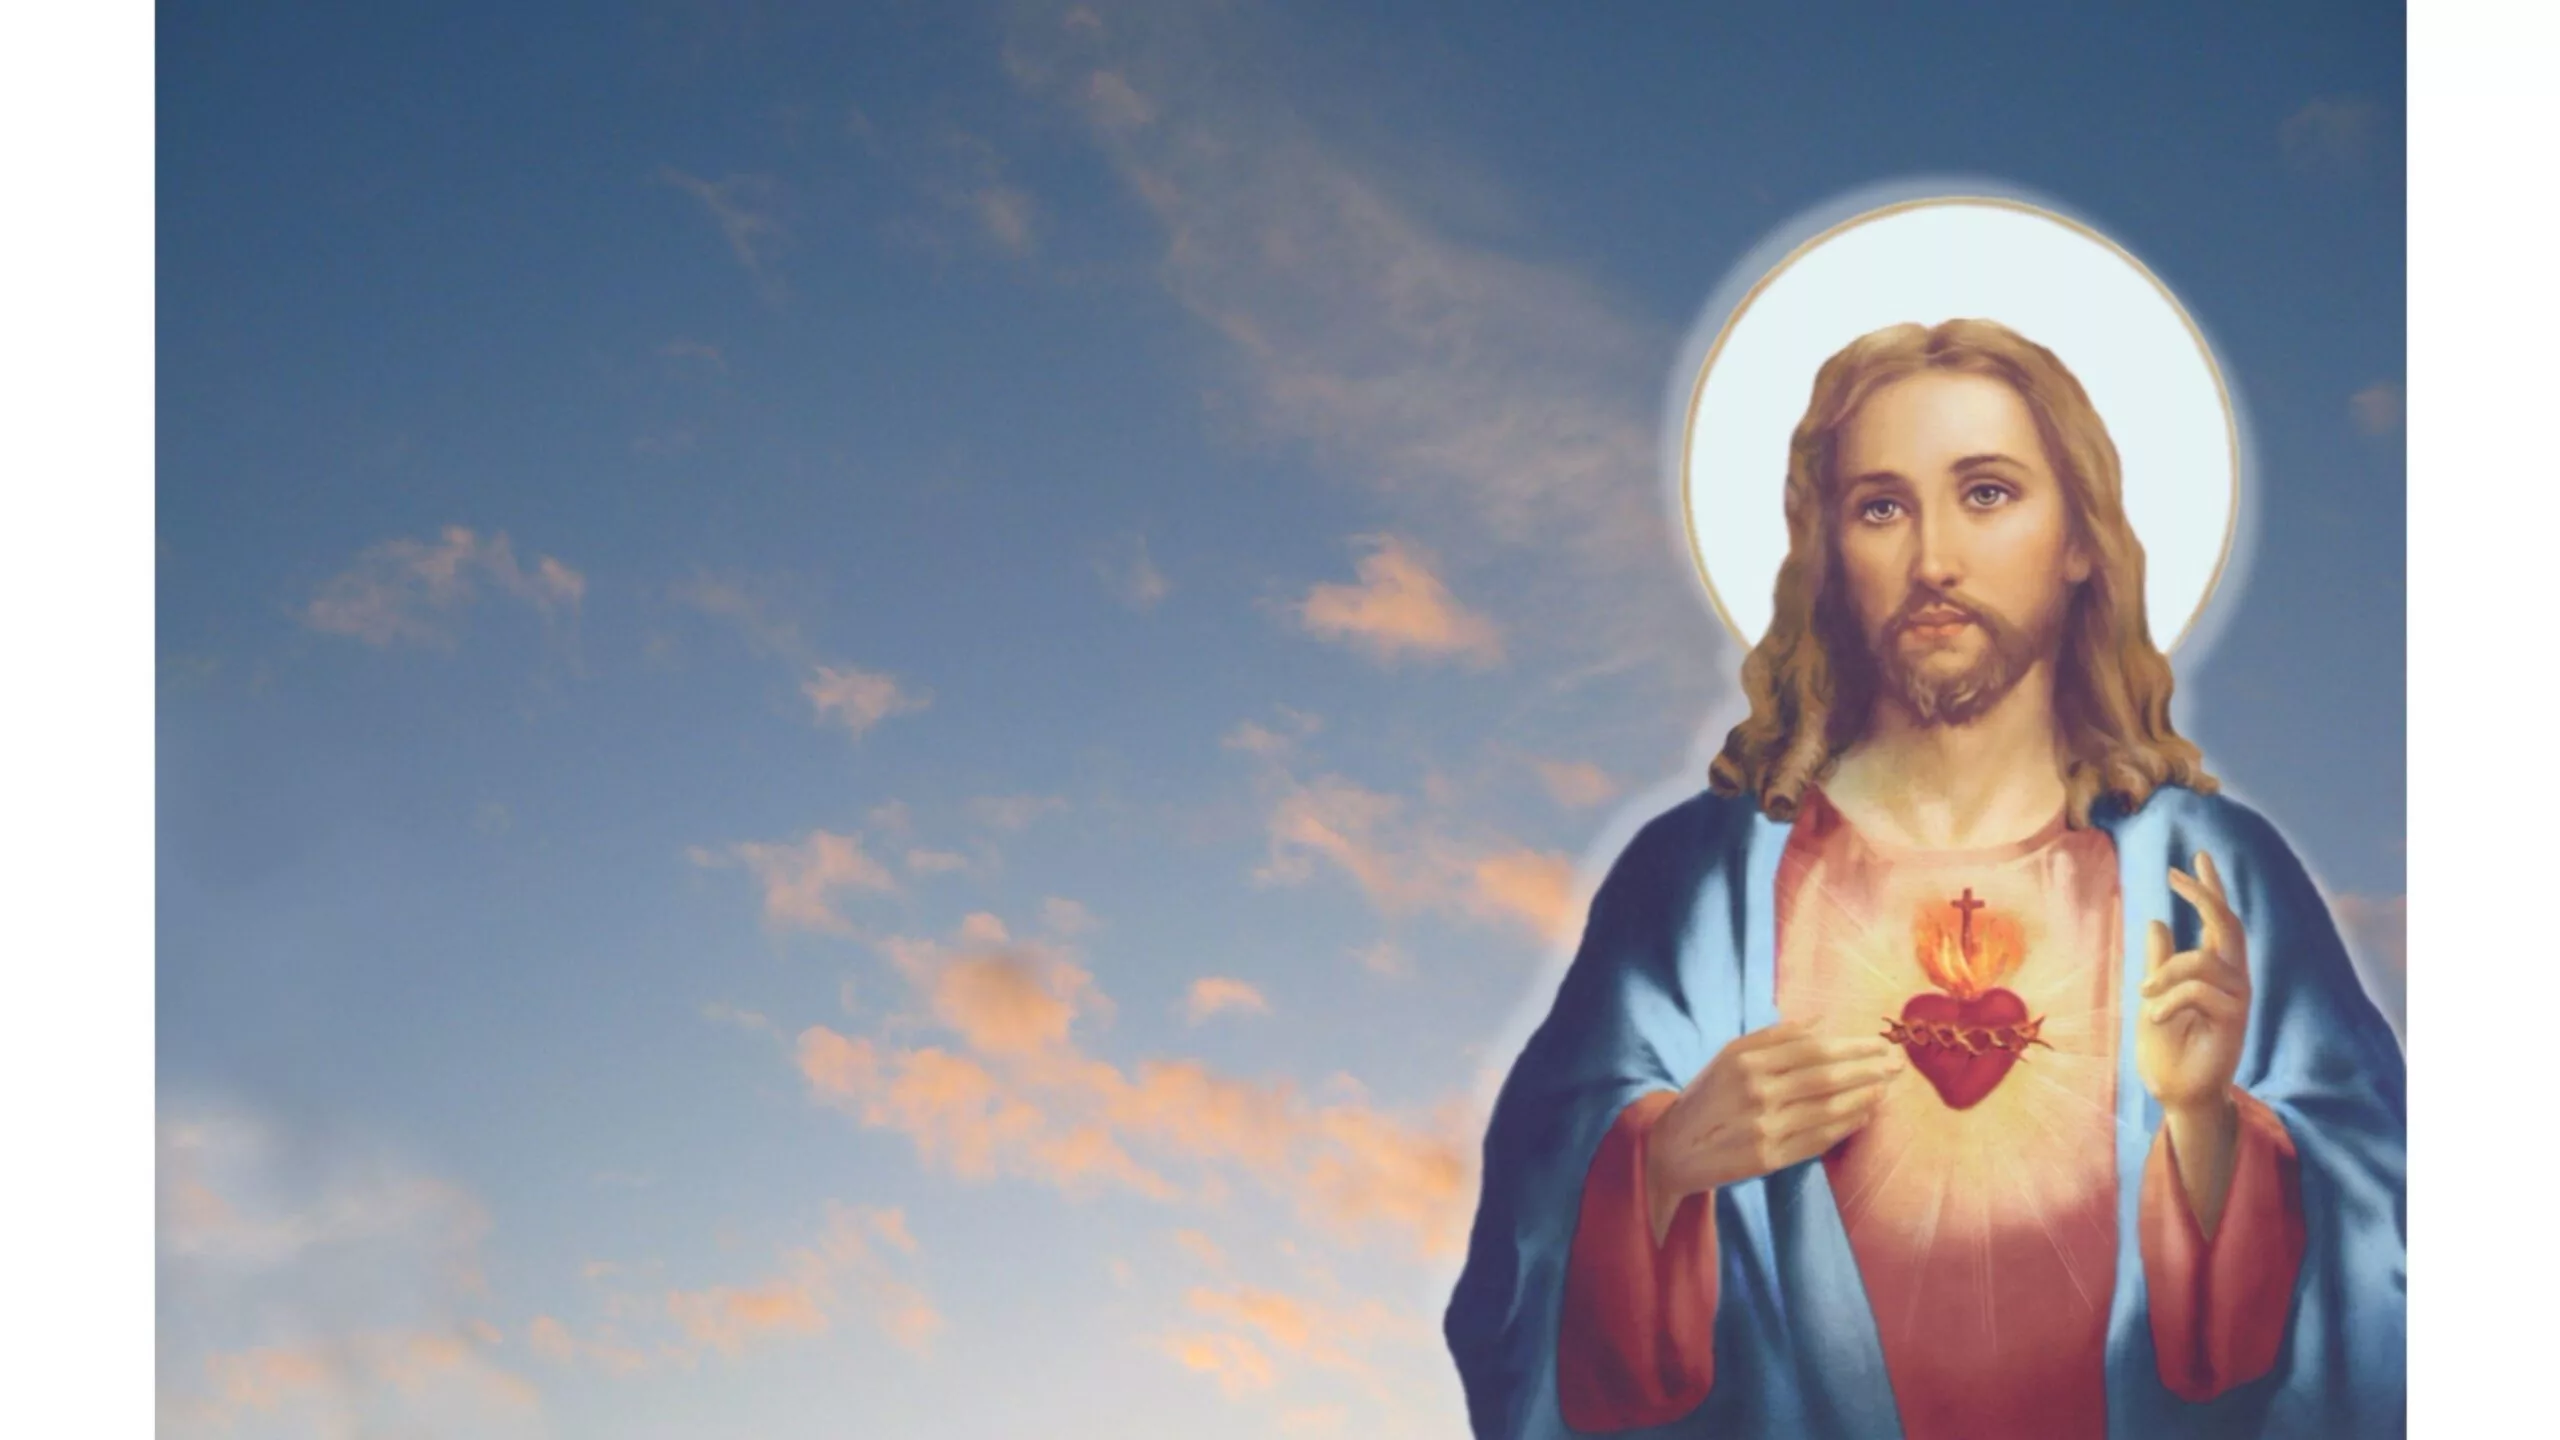 Revelando a Serenidade Divina: Papel de Parede com Imagens de Jesus Cristo